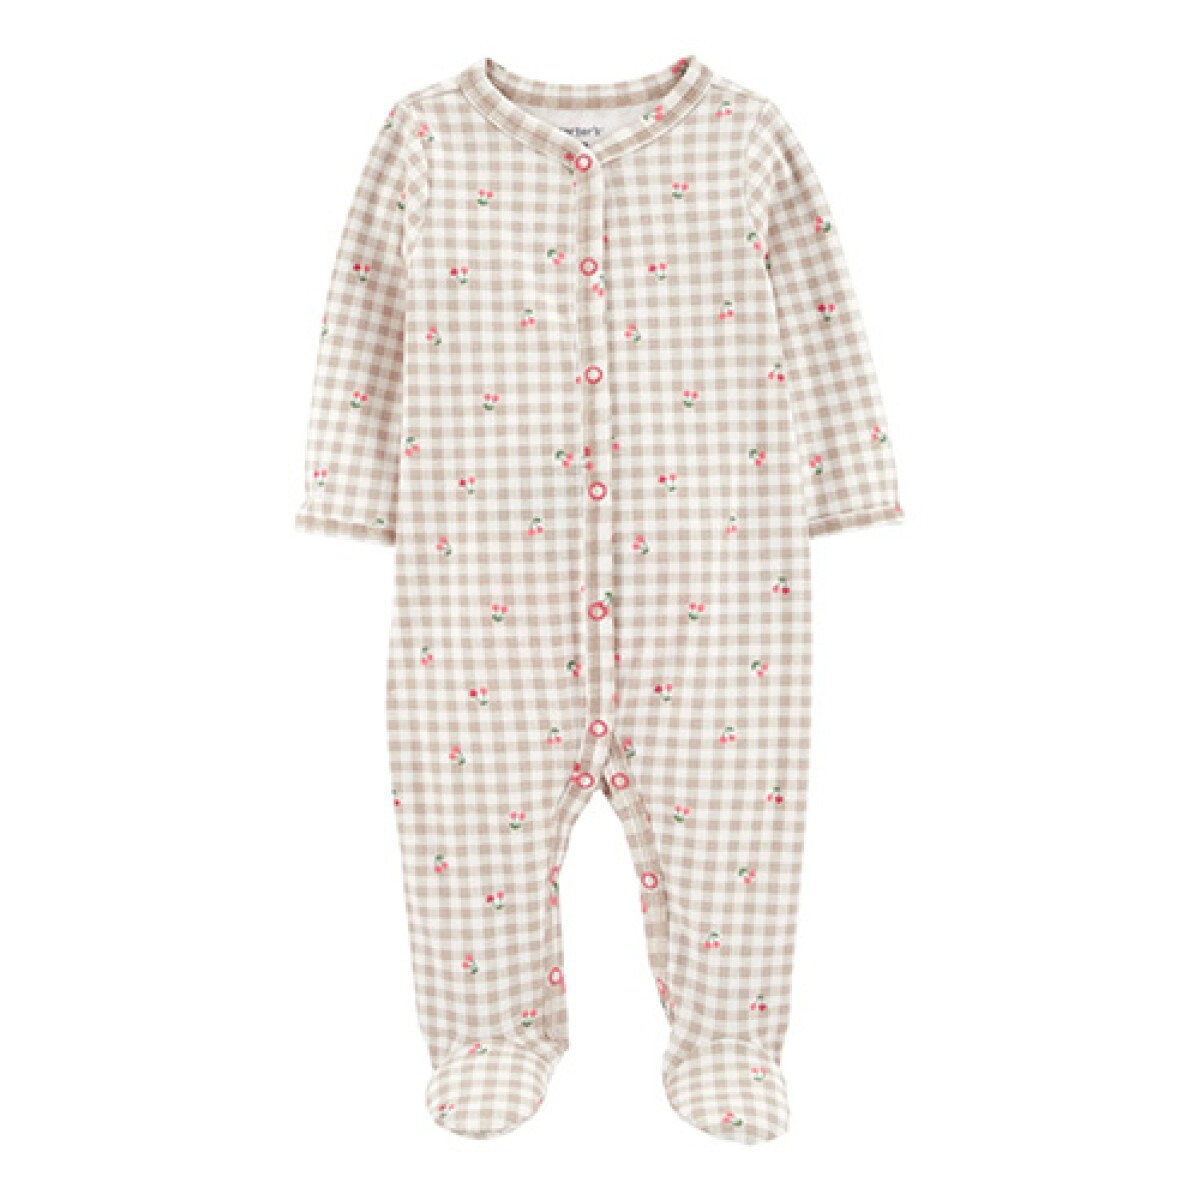 Pijama de algodón con pie estampado cerezas Carters - MULTICOLOR 